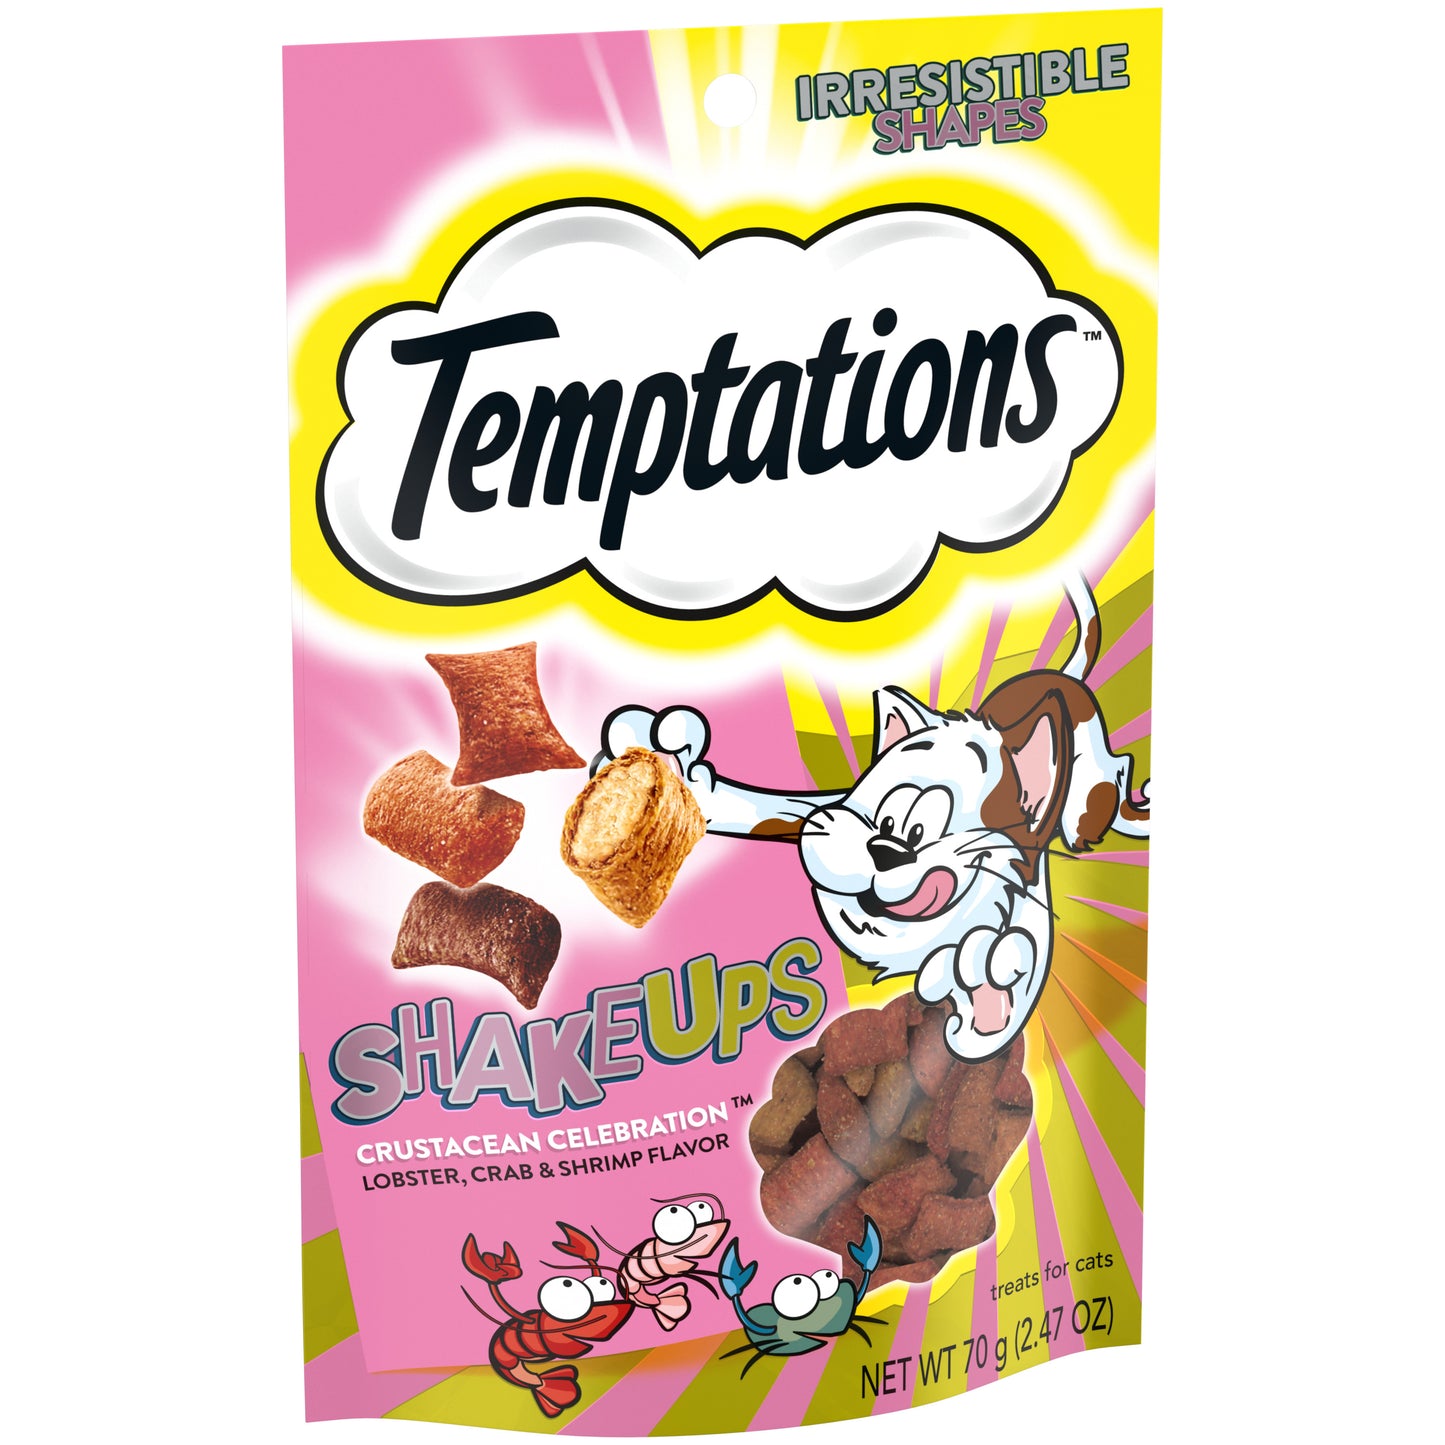 [Temptations][TEMPTATIONS ShakeUps Crunchy and Soft Cat Treats, Crustacean Celebration Flavor, 2.47 oz. Pouch][Image Center Left (3/4 Angle)]